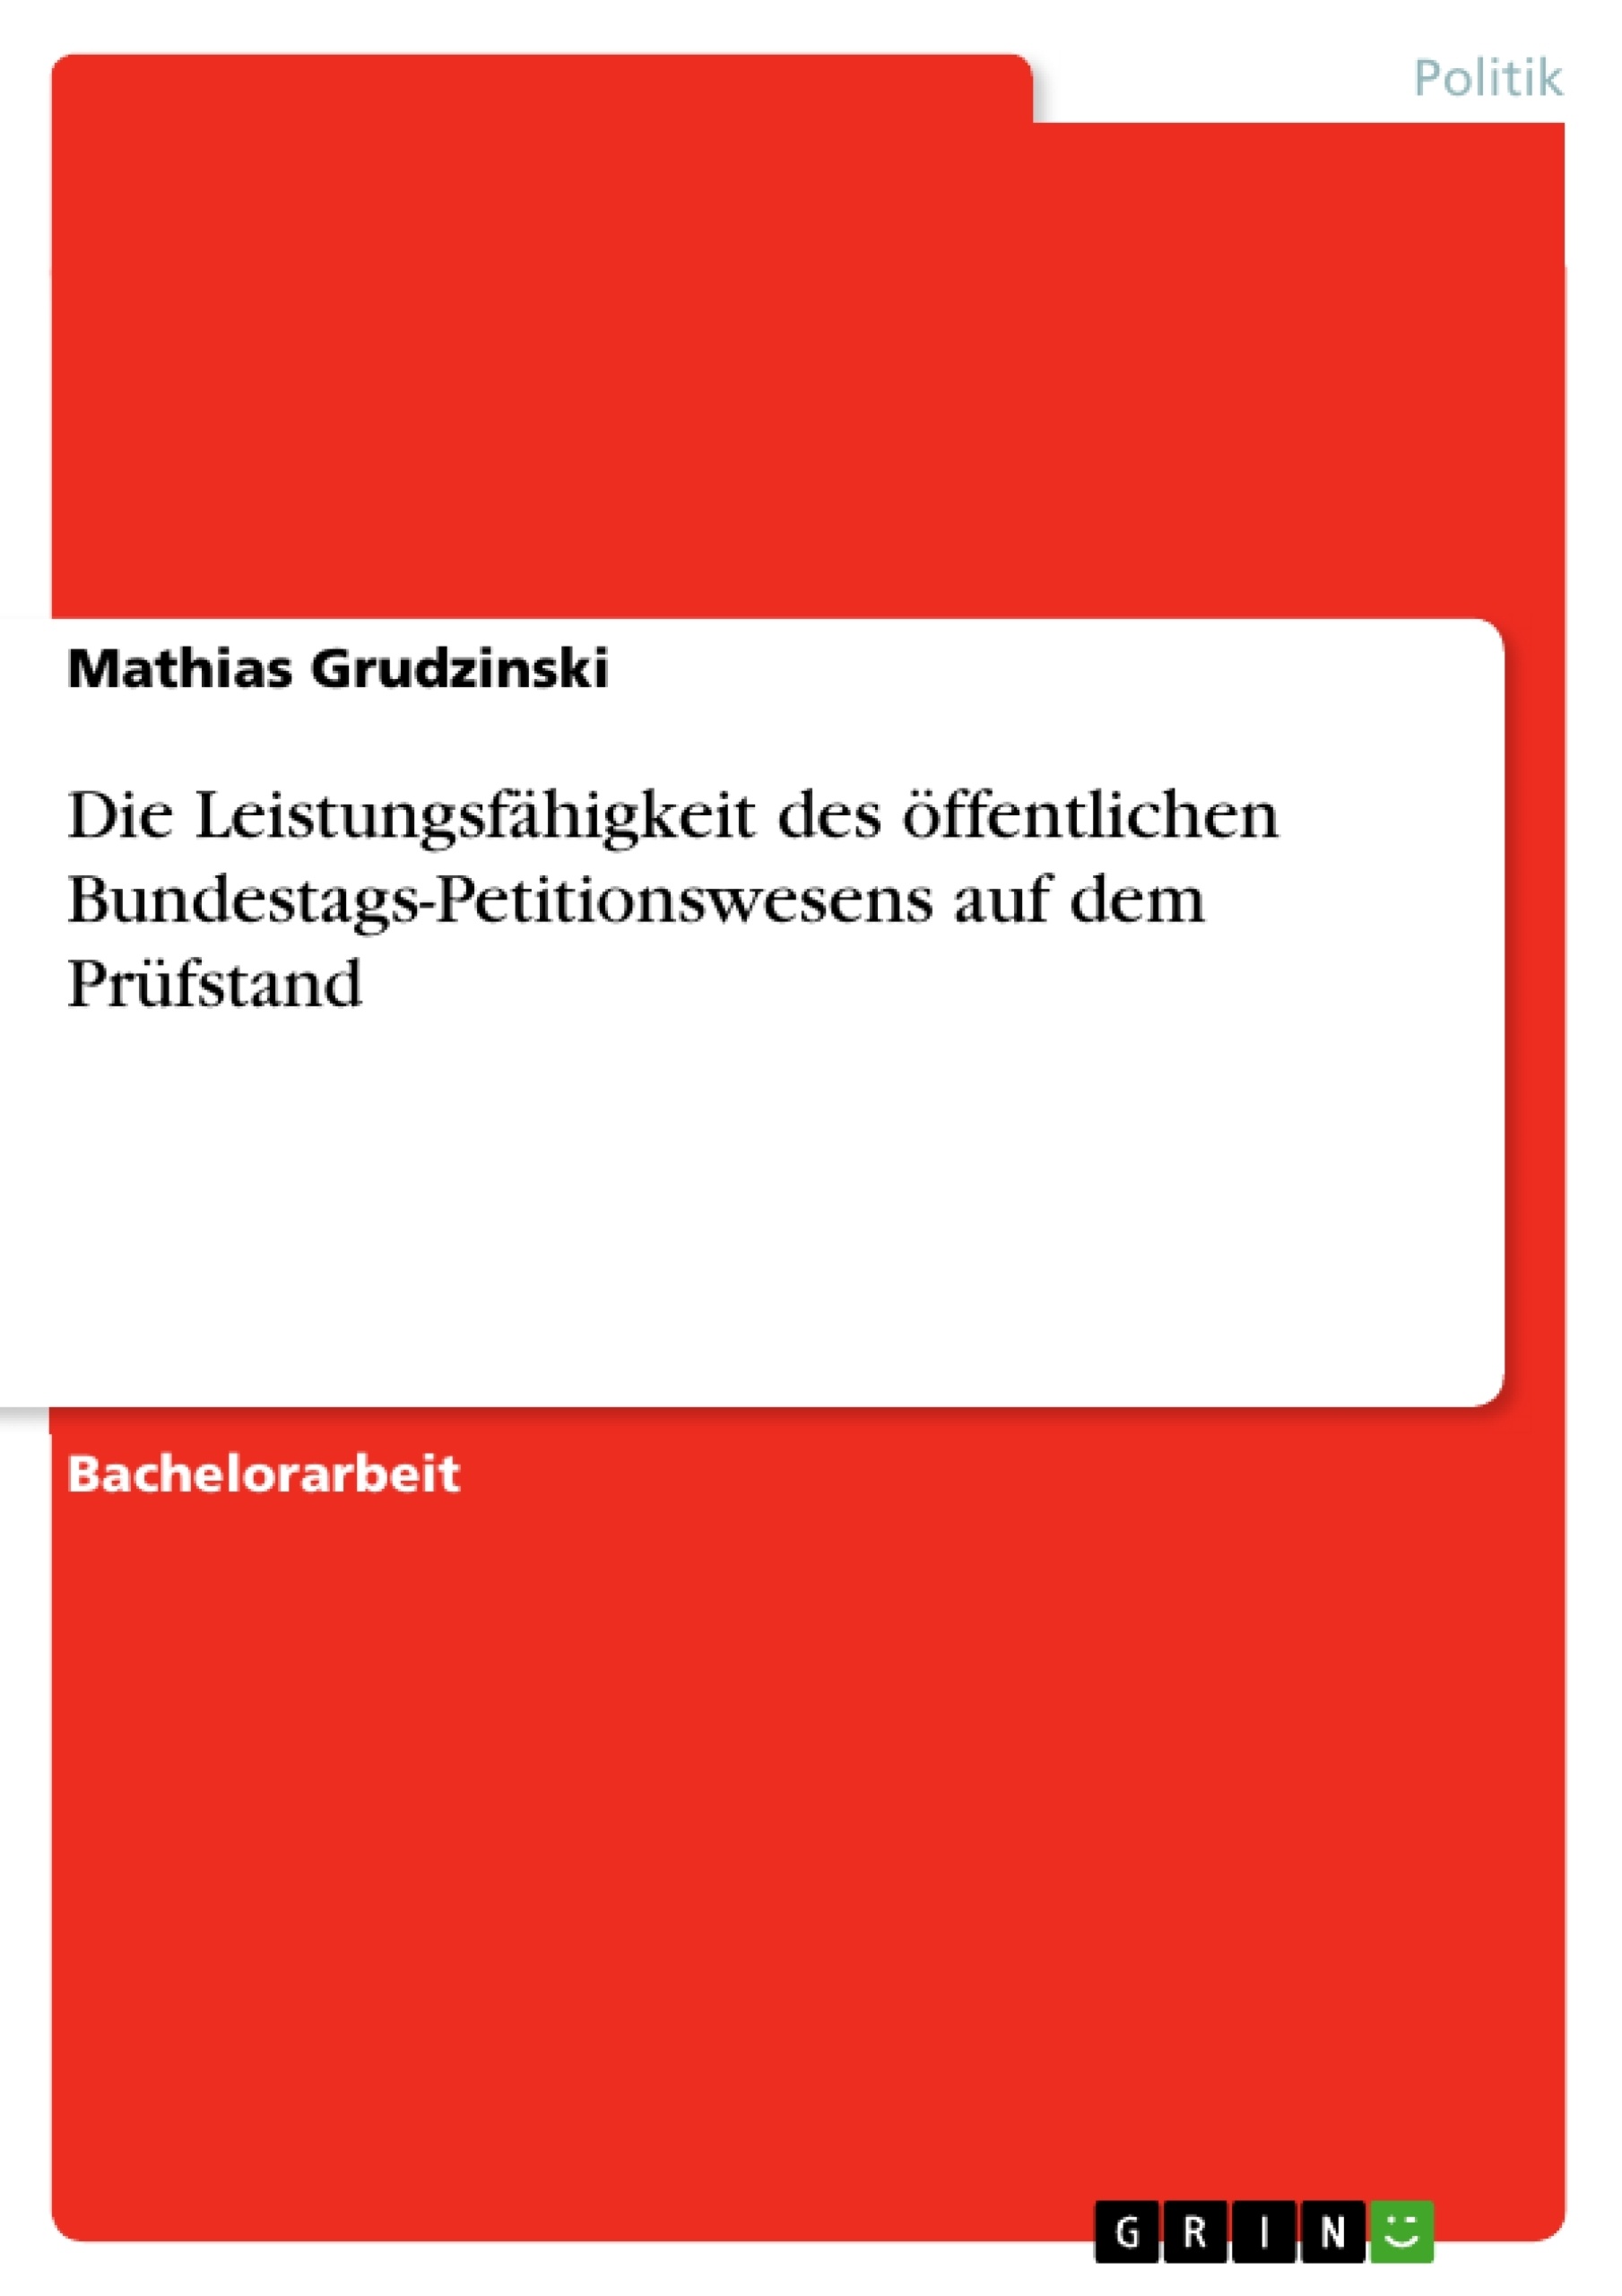 Título: Die Leistungsfähigkeit des öffentlichen Bundestags-Petitionswesens auf dem Prüfstand